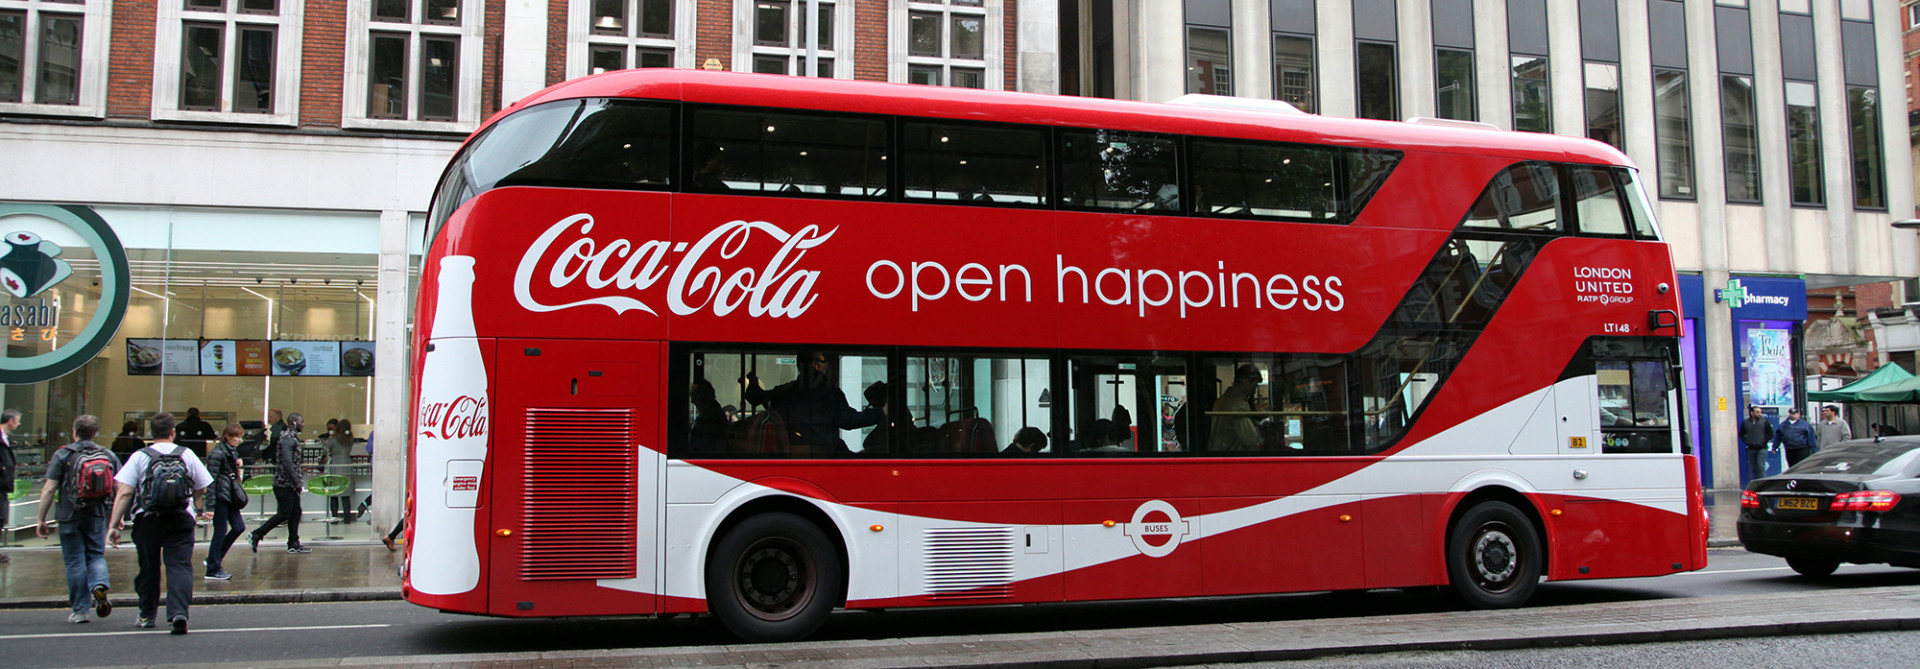 Bus Exterior Advertising